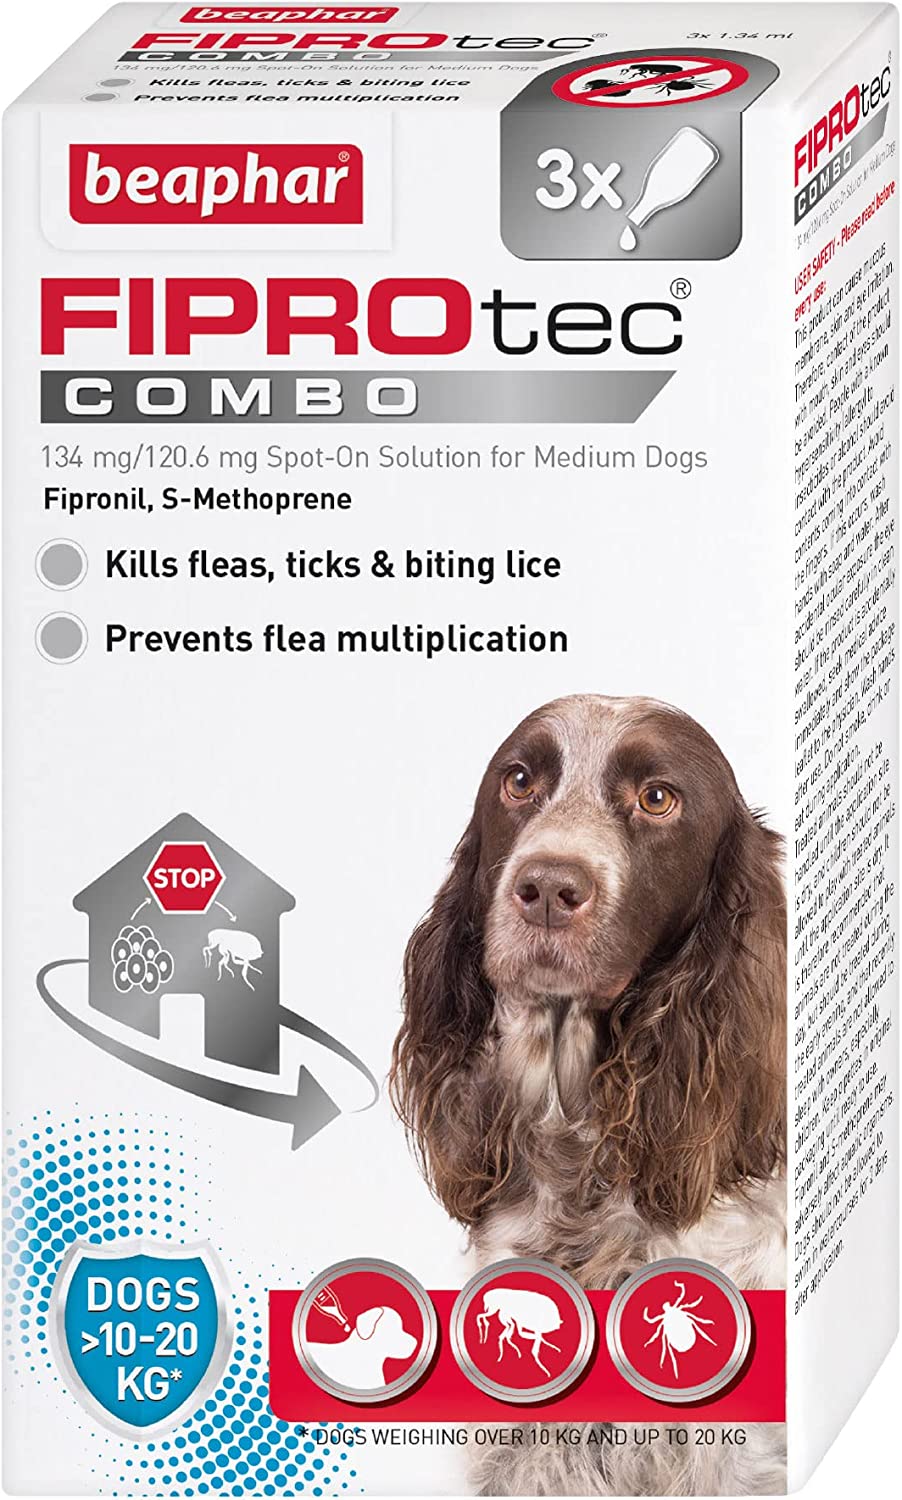 Beaphar Fiprotec Combo Flea & Tick Spot On For Medium Dogs (10-20kg) 3 pack